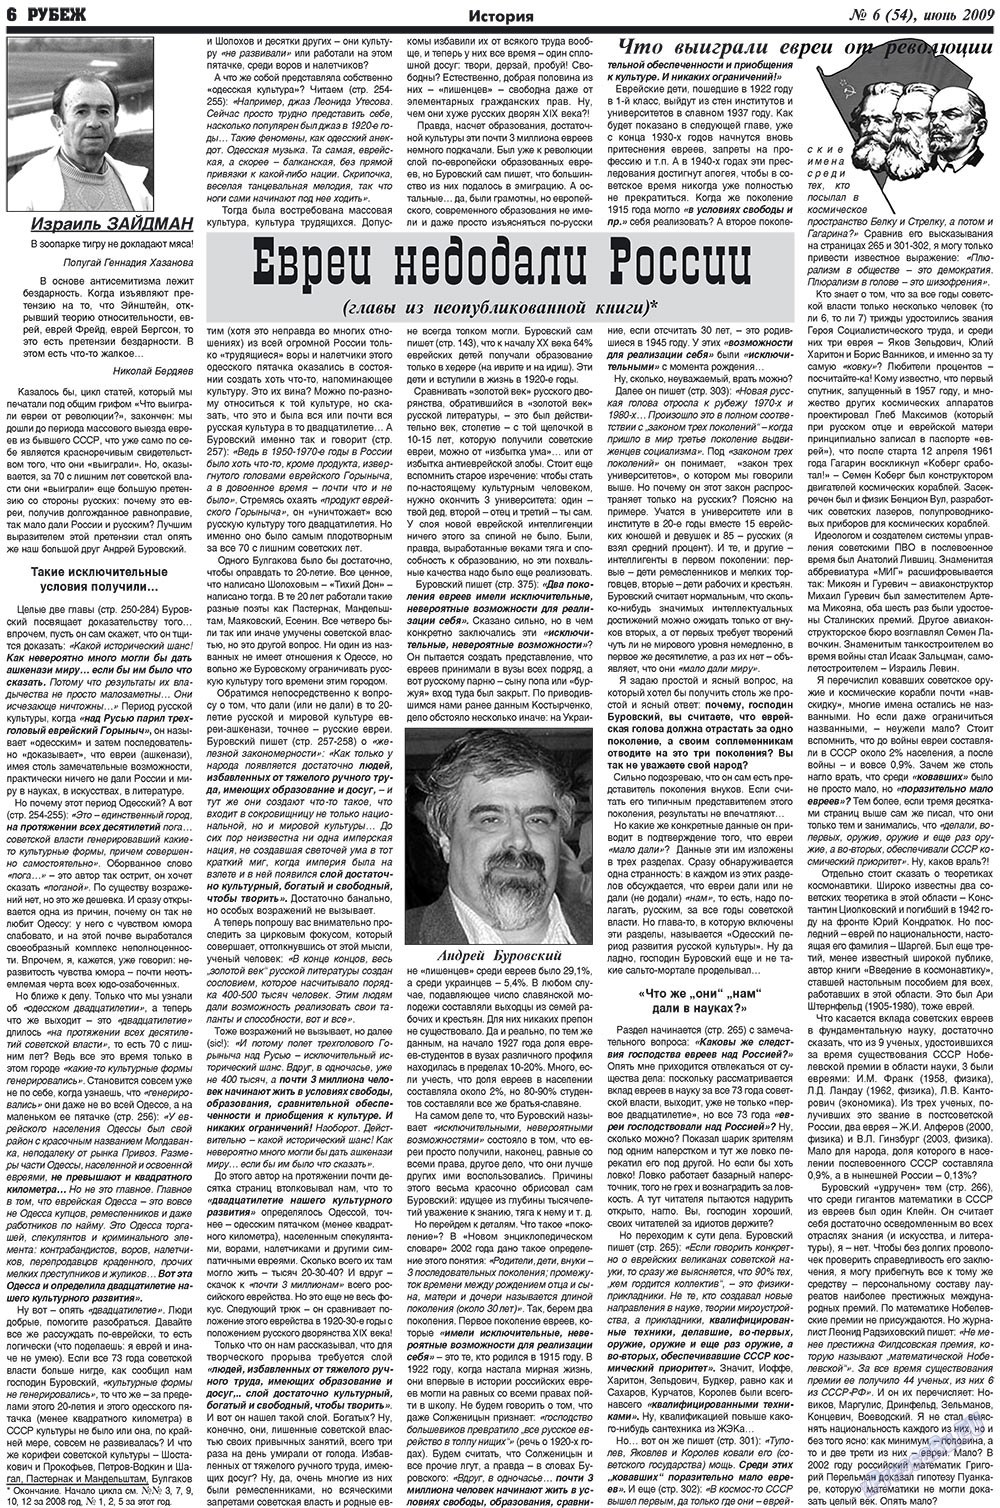 Рубеж (газета). 2009 год, номер 6, стр. 6